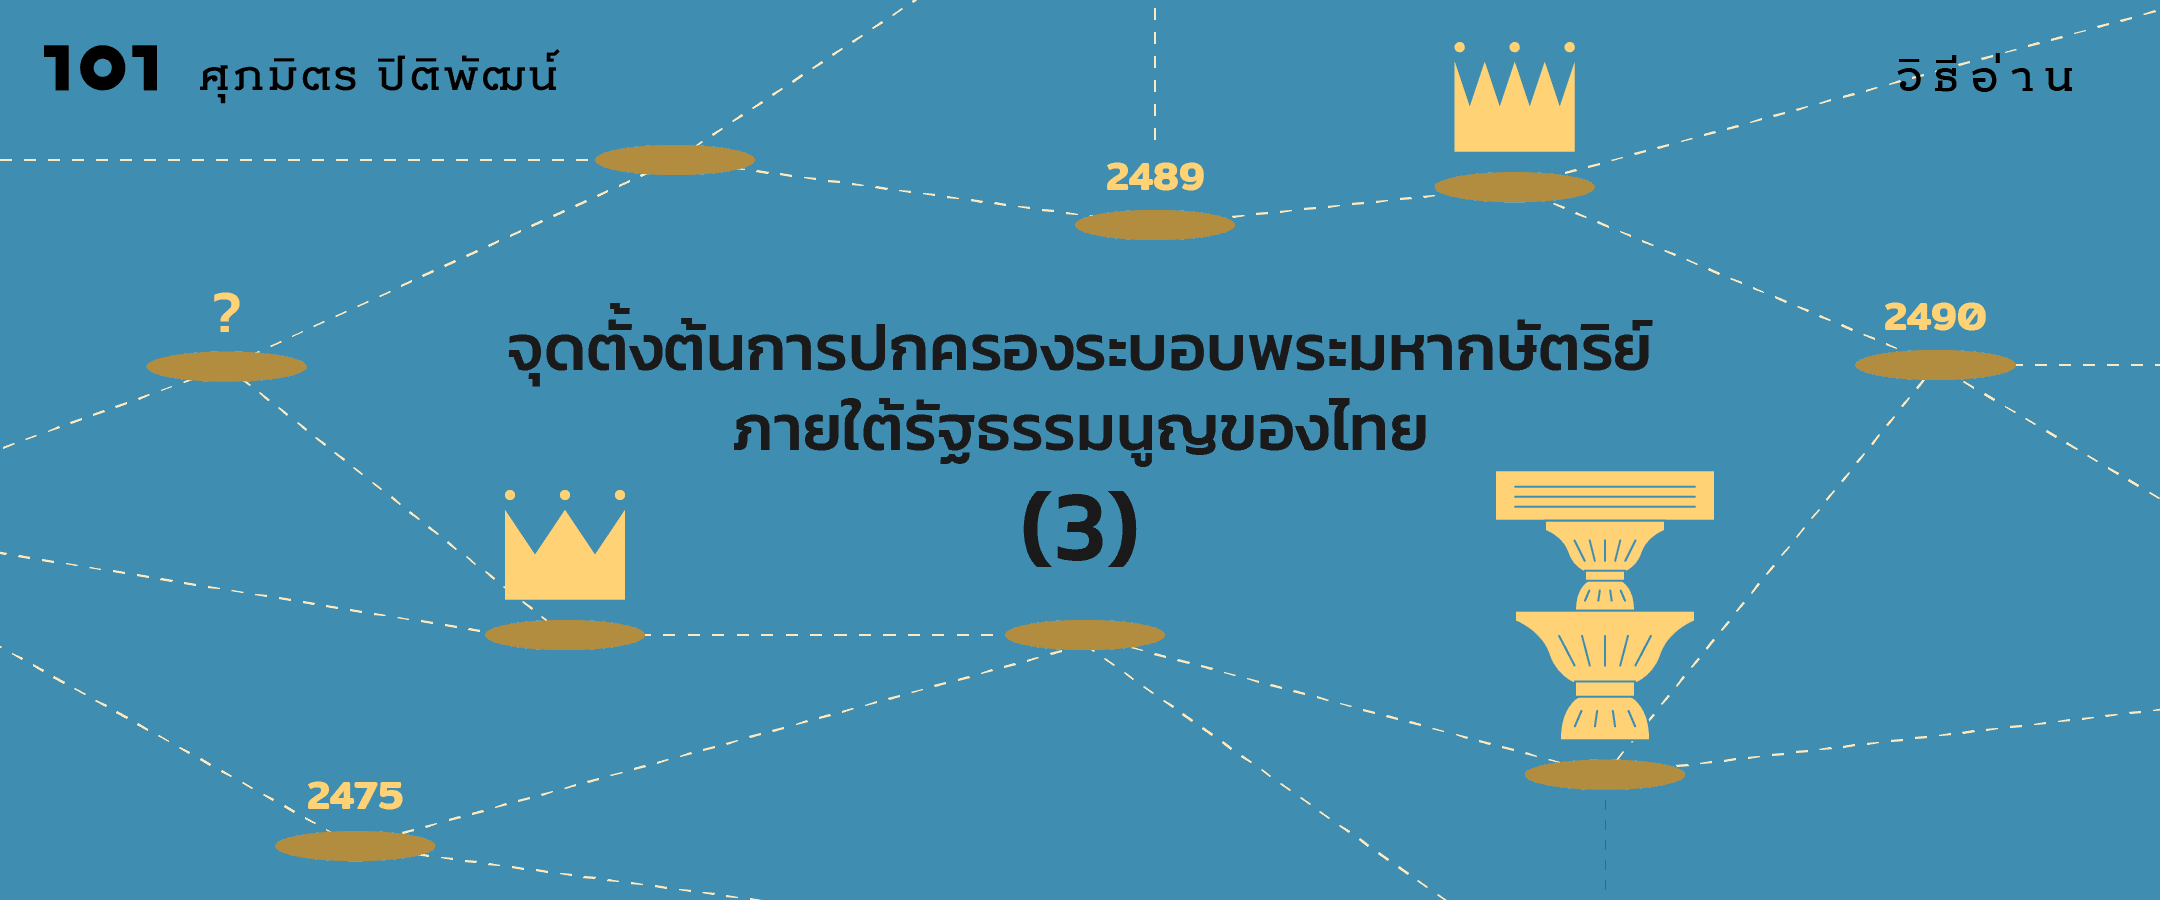 จุดตั้งต้นการปกครองระบอบพระมหากษัตริย์ภายใต้รัฐธรรมนูญของไทย